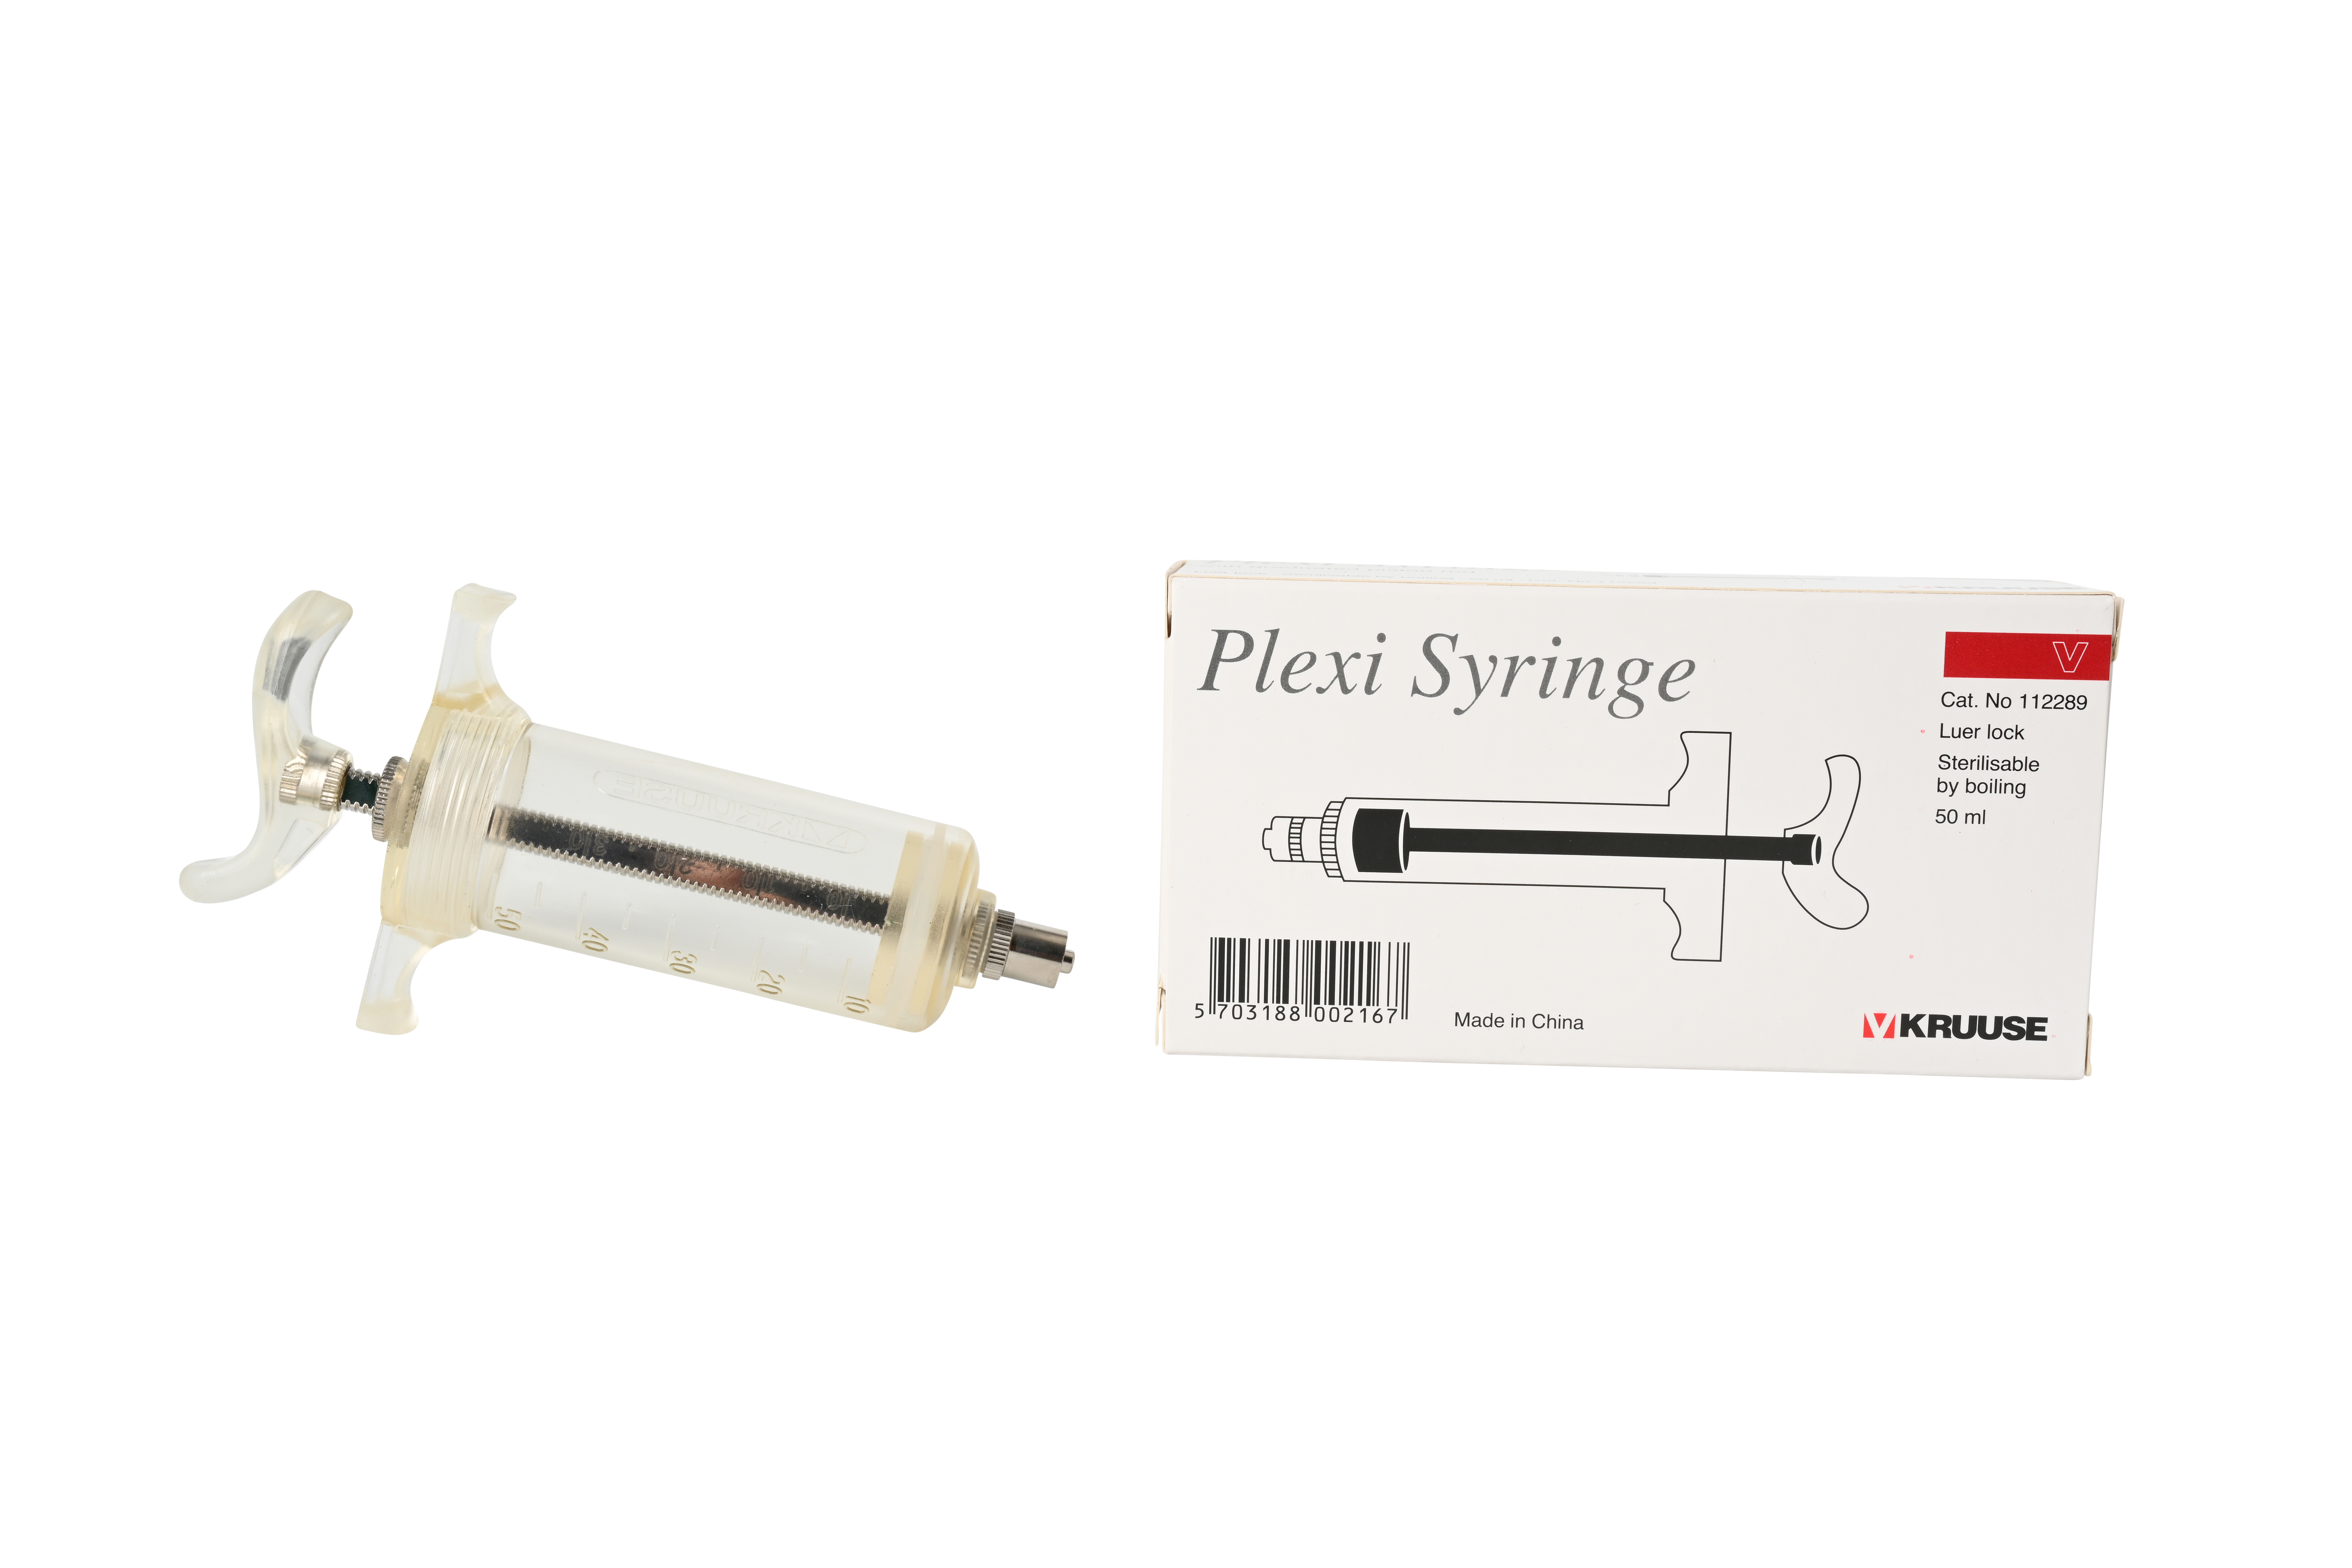 KRUUSE Plexi Syringe, Luer Lock, with graduated piston rod, 50 ml